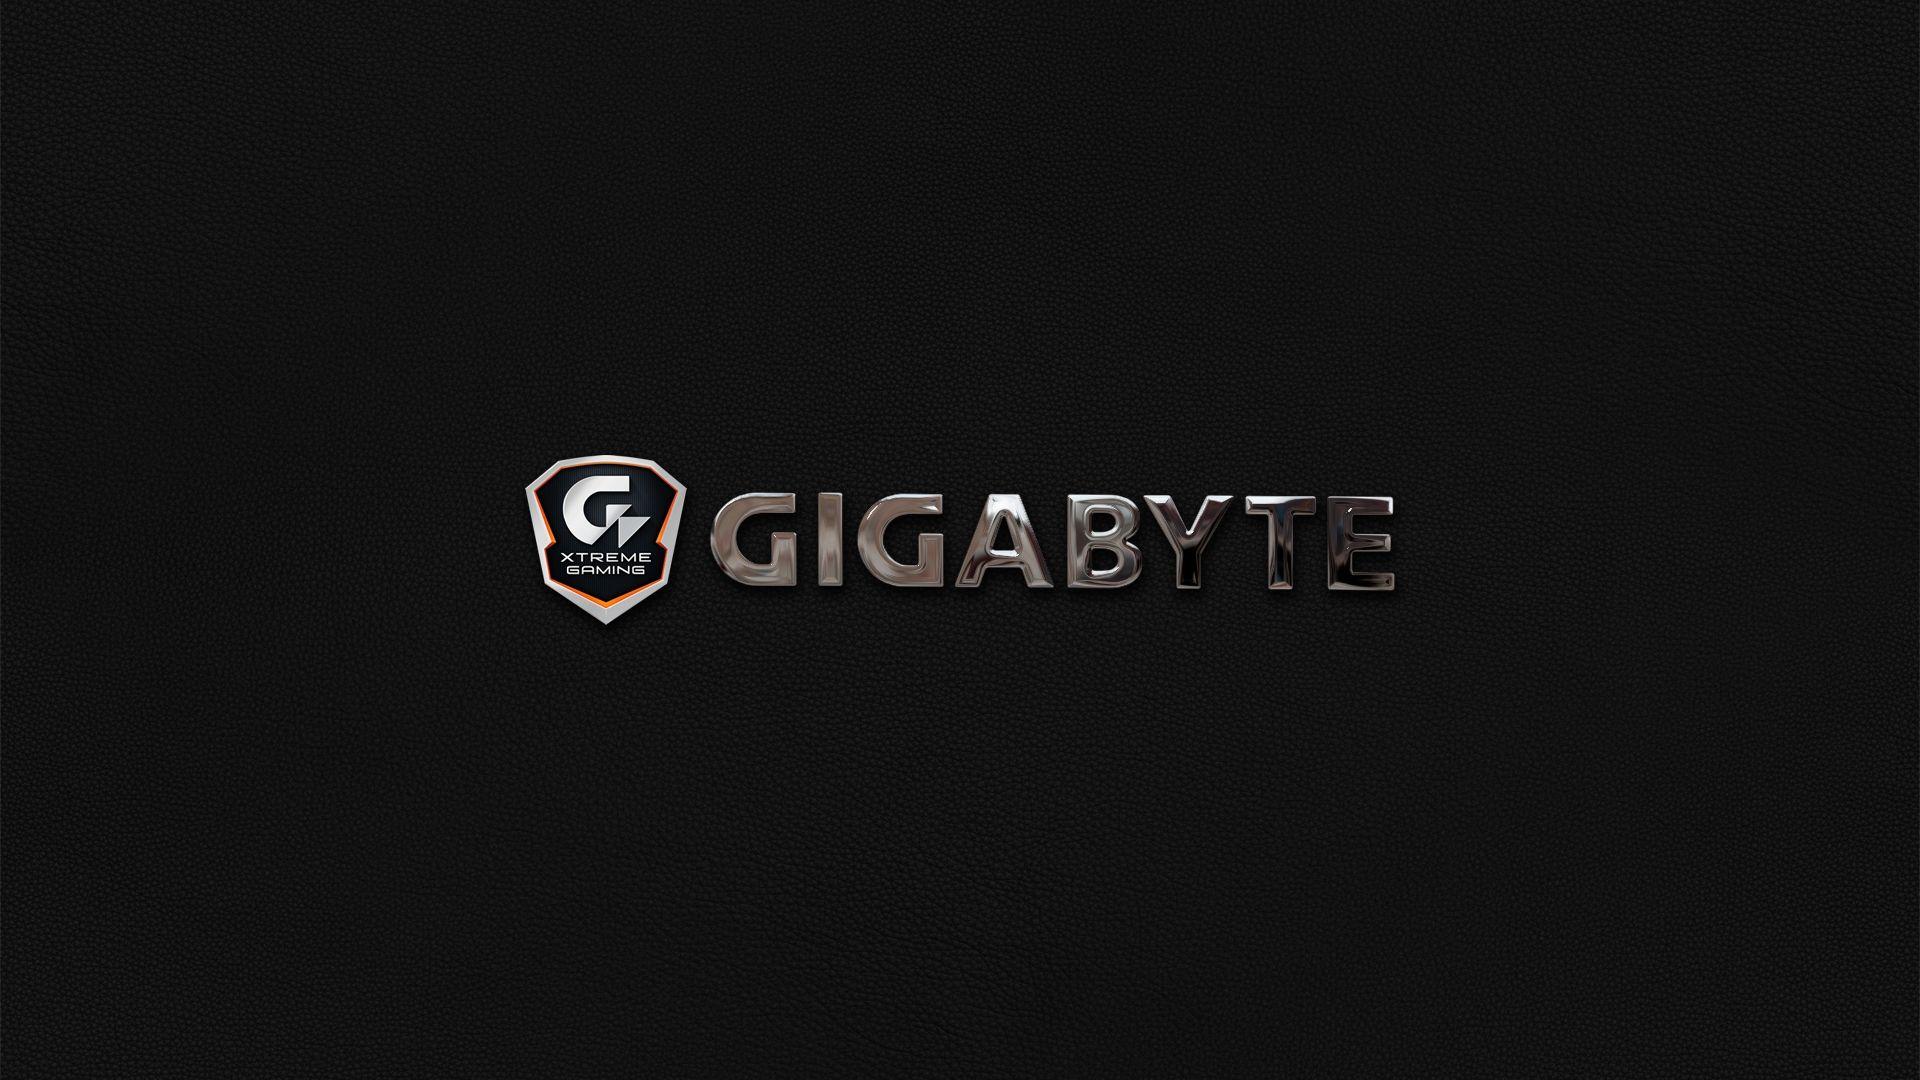 Gigabyte Technology Wallpaper - technology